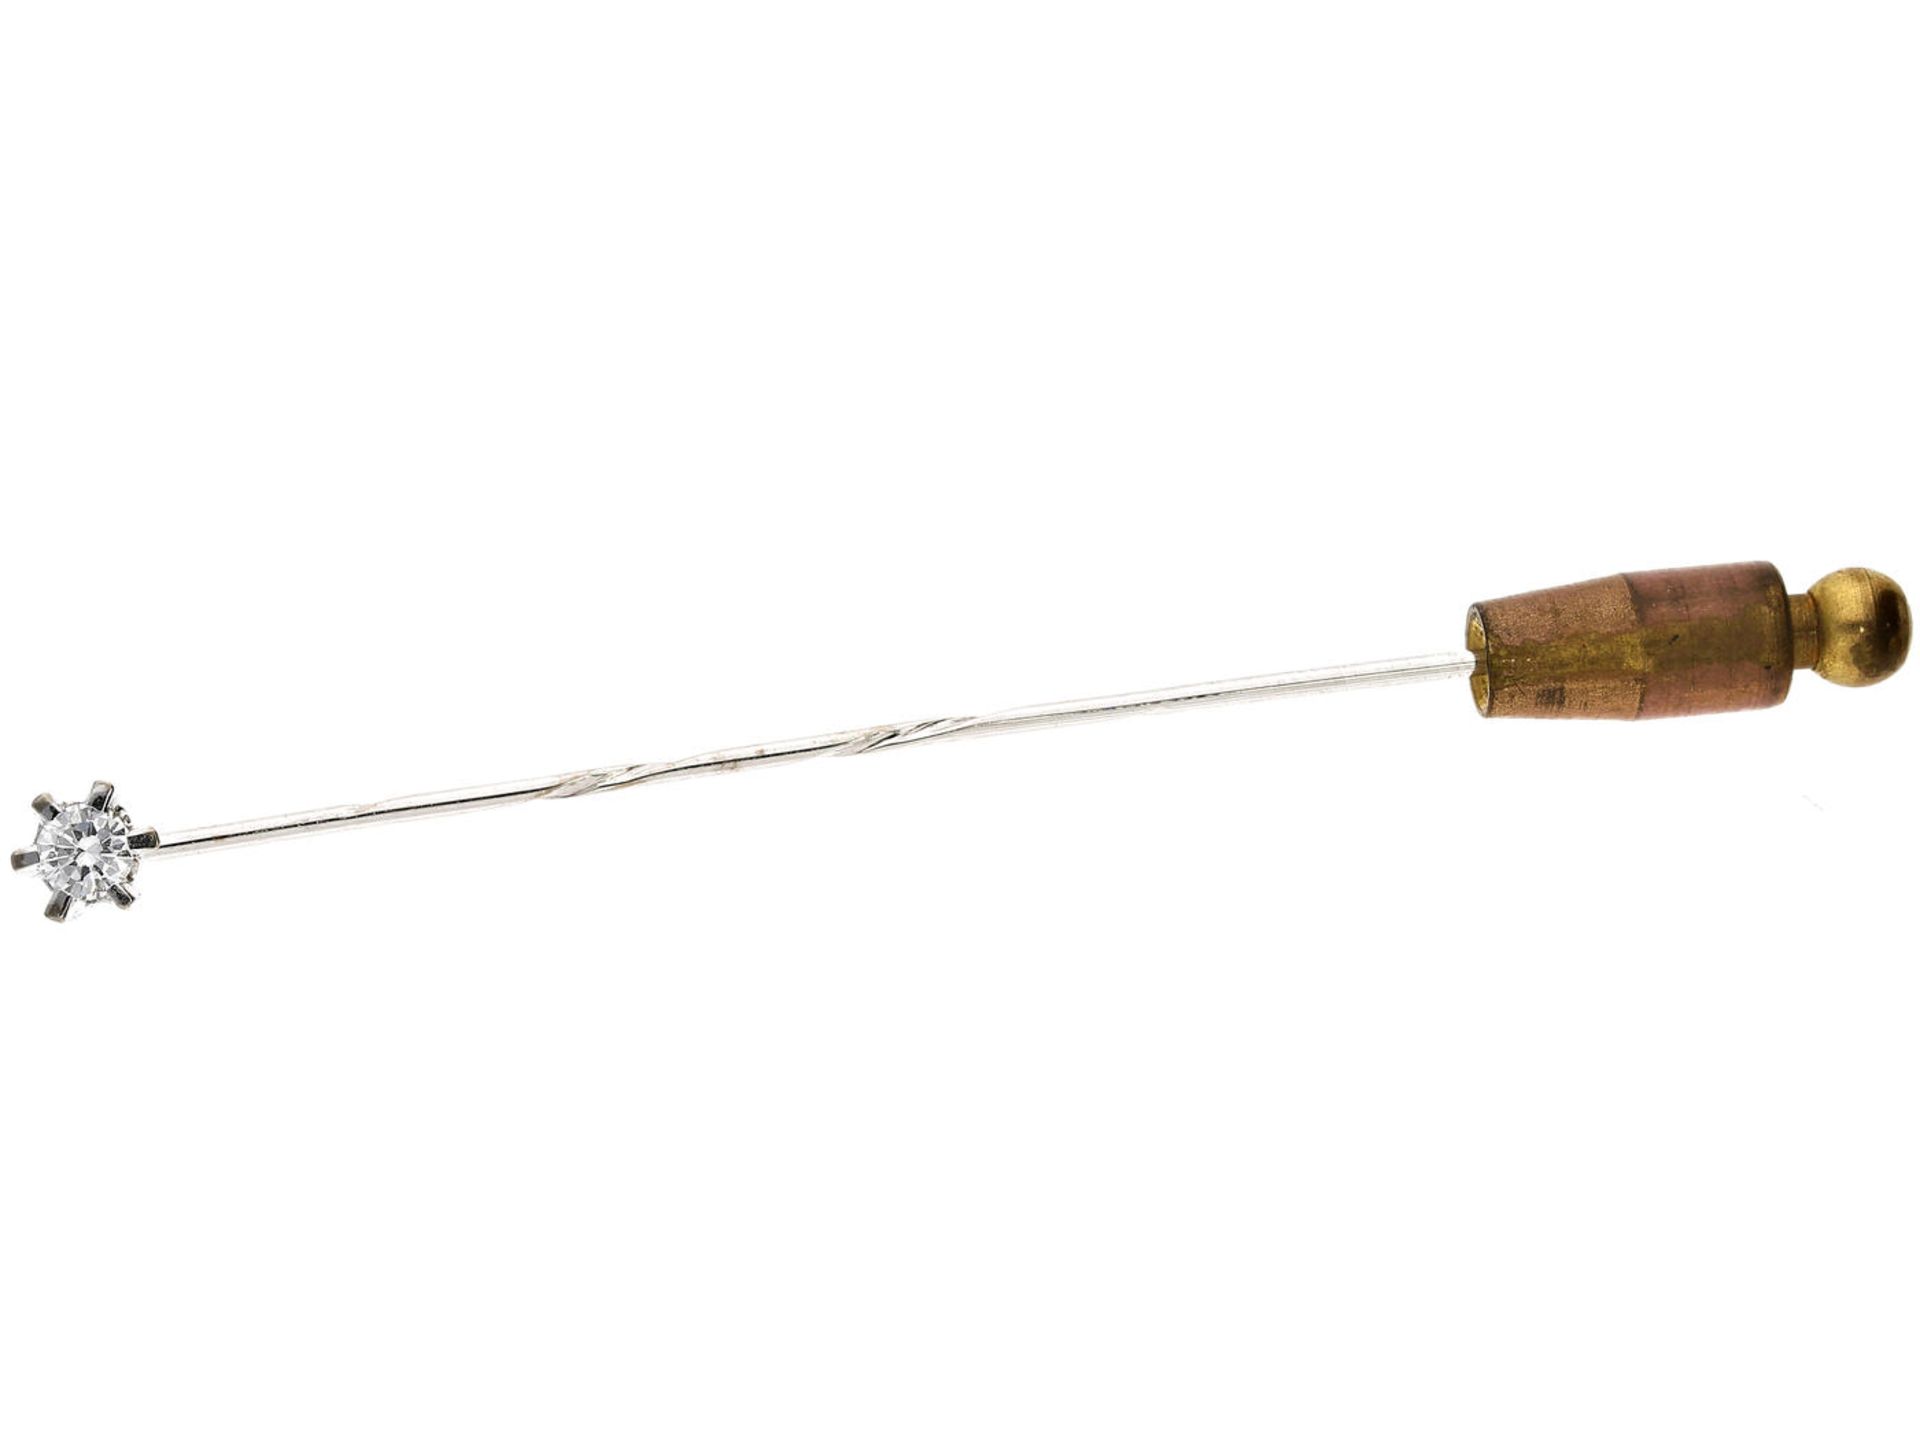 Krawattennadel: edle vintage Nadel mit Brillantbesatz Ca. 67mm lang, 14K Weißgold, feiner Brillant